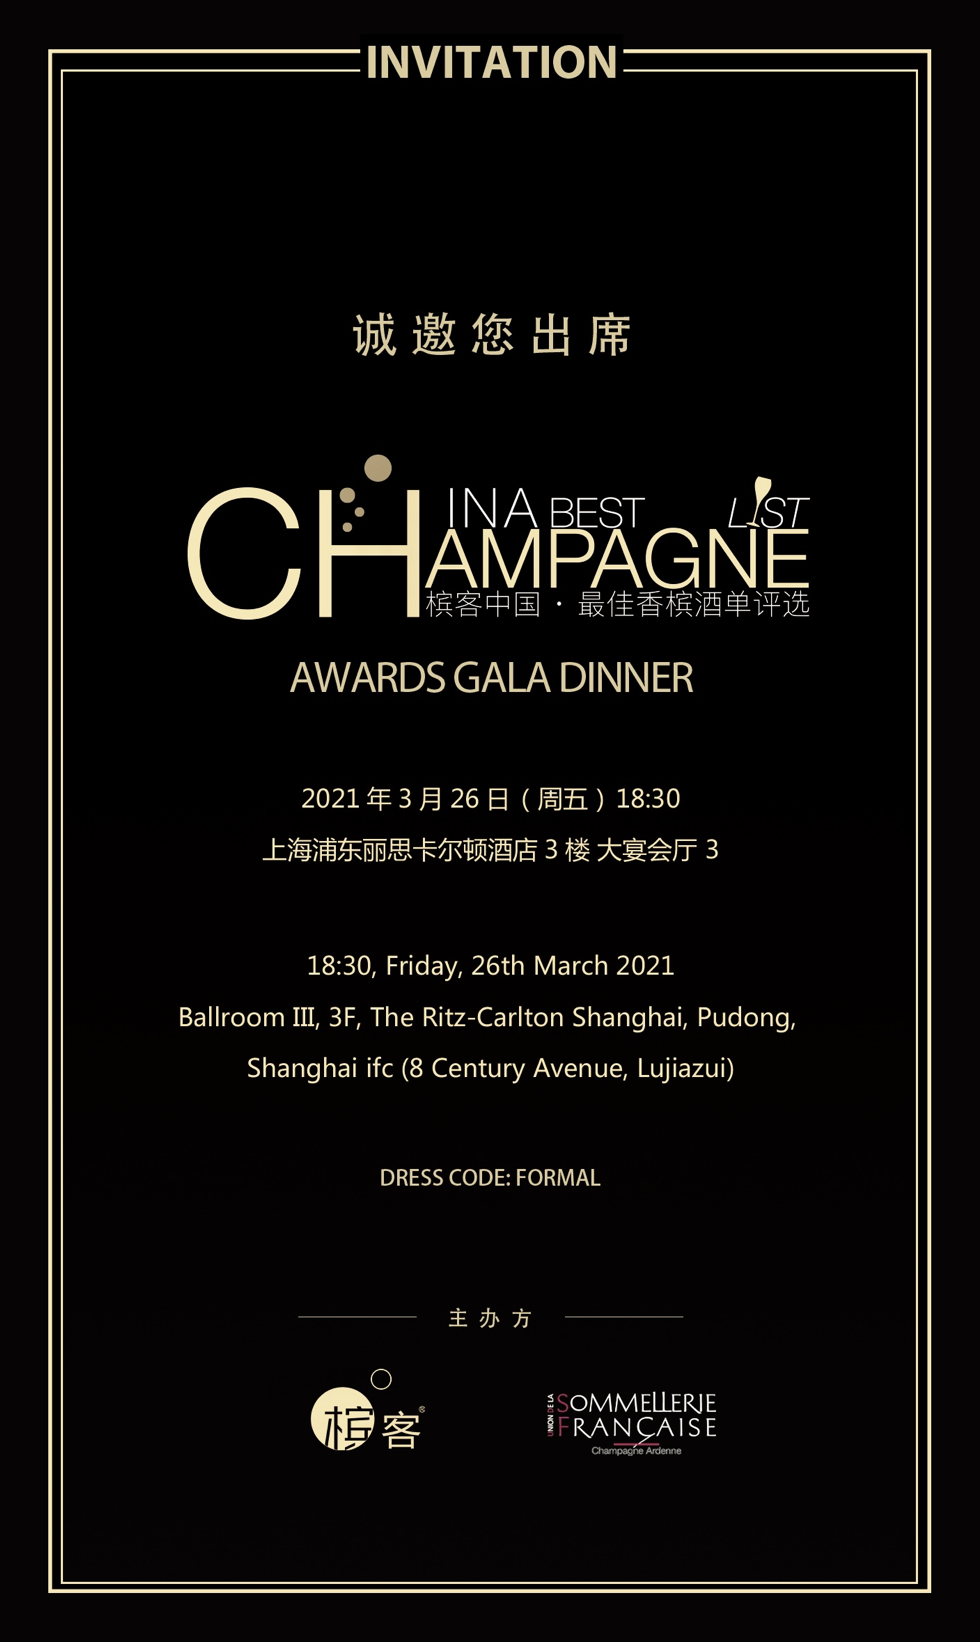 上海3.26 | 最佳香槟酒单评选最终颁奖晚宴实用信息汇总